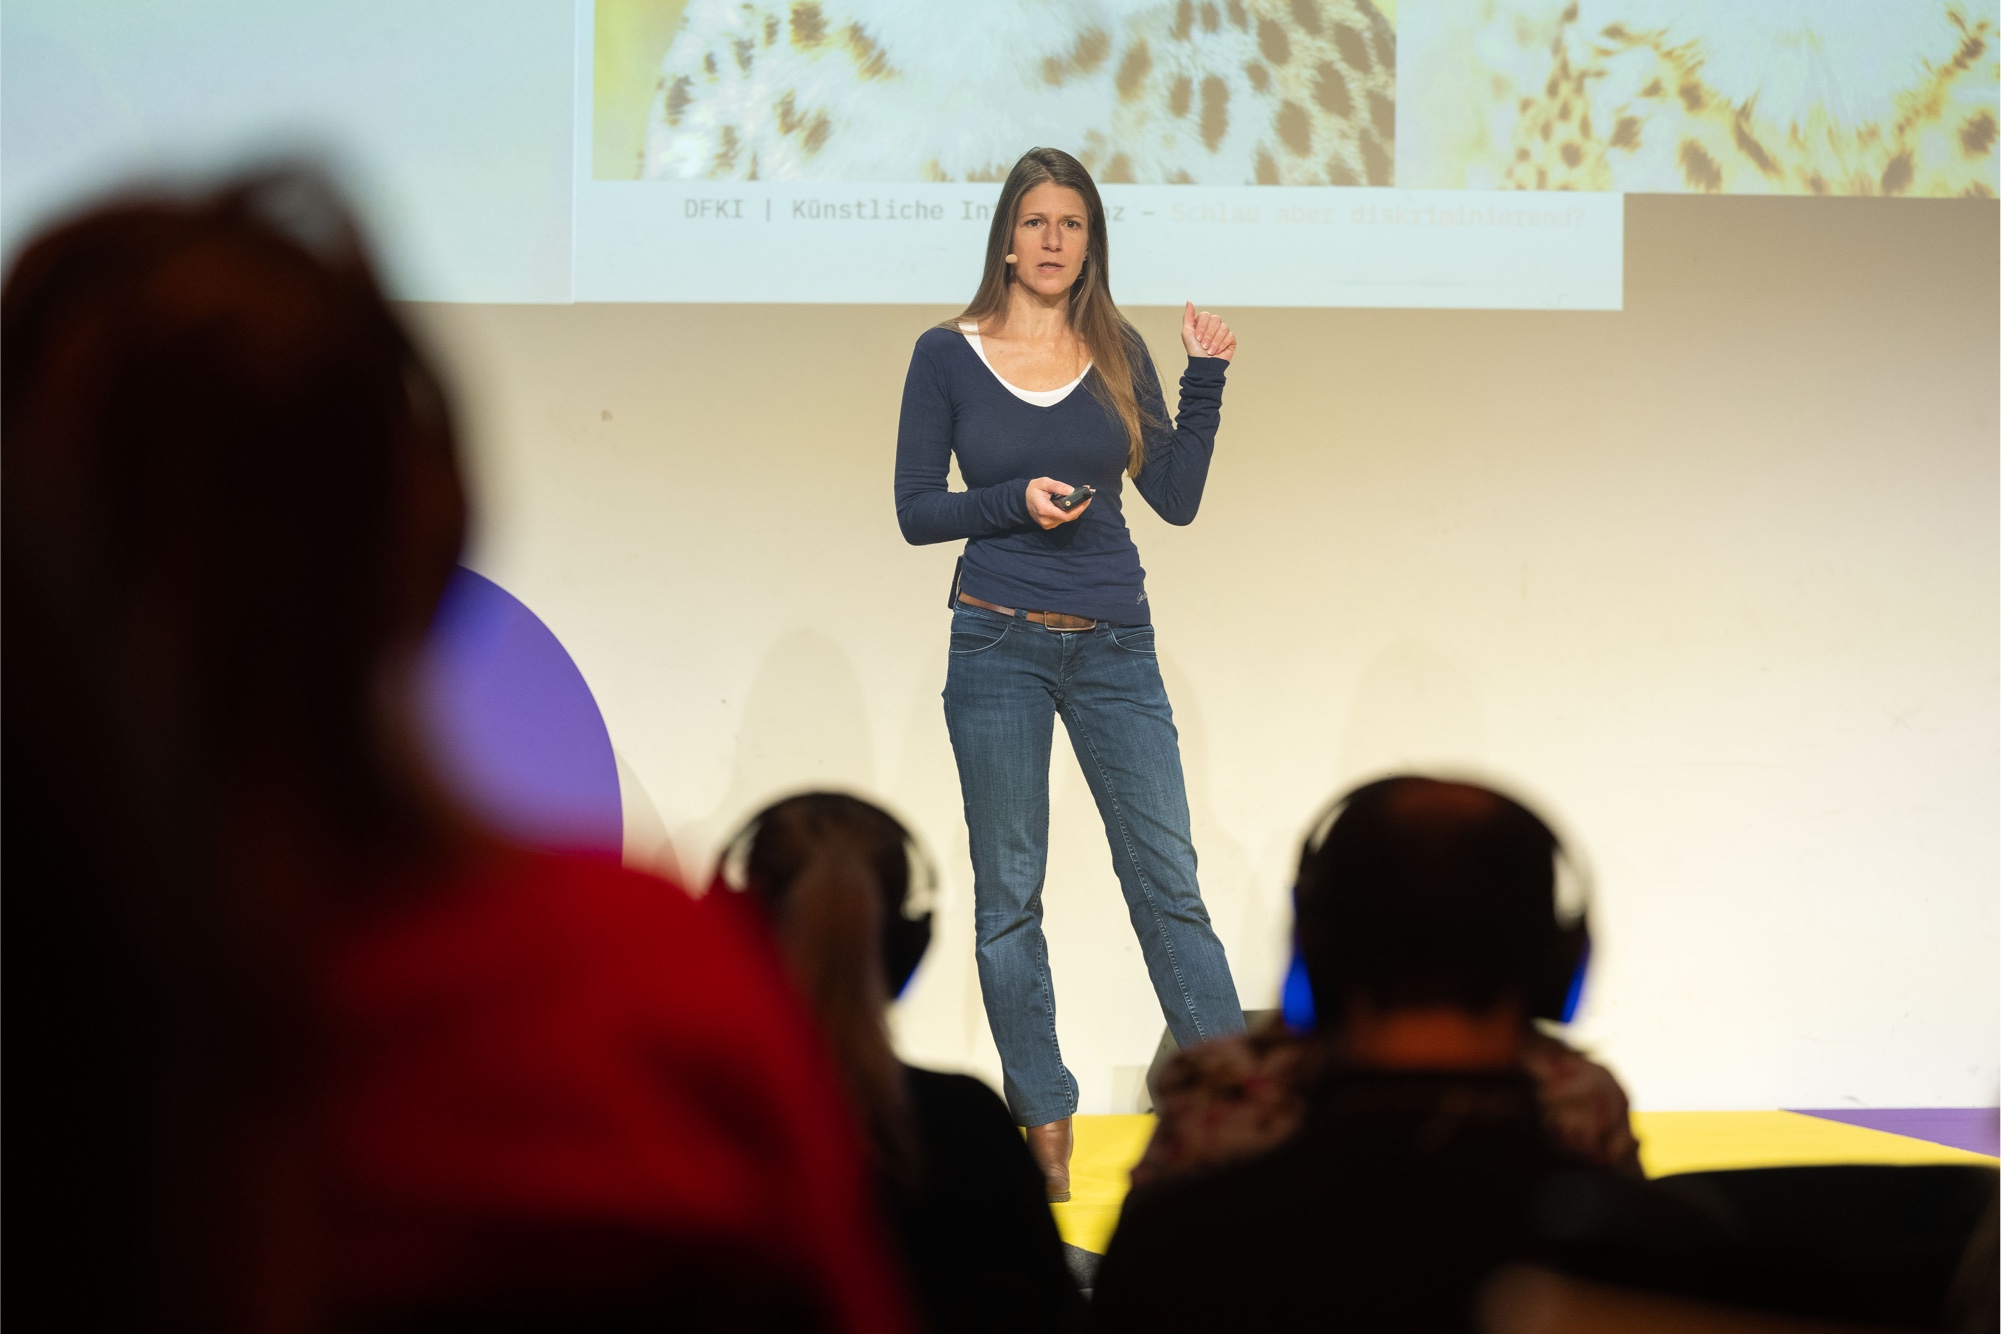 Dr. Kinga Schumacher spricht zum Thema "Künstliche Intelligenz"